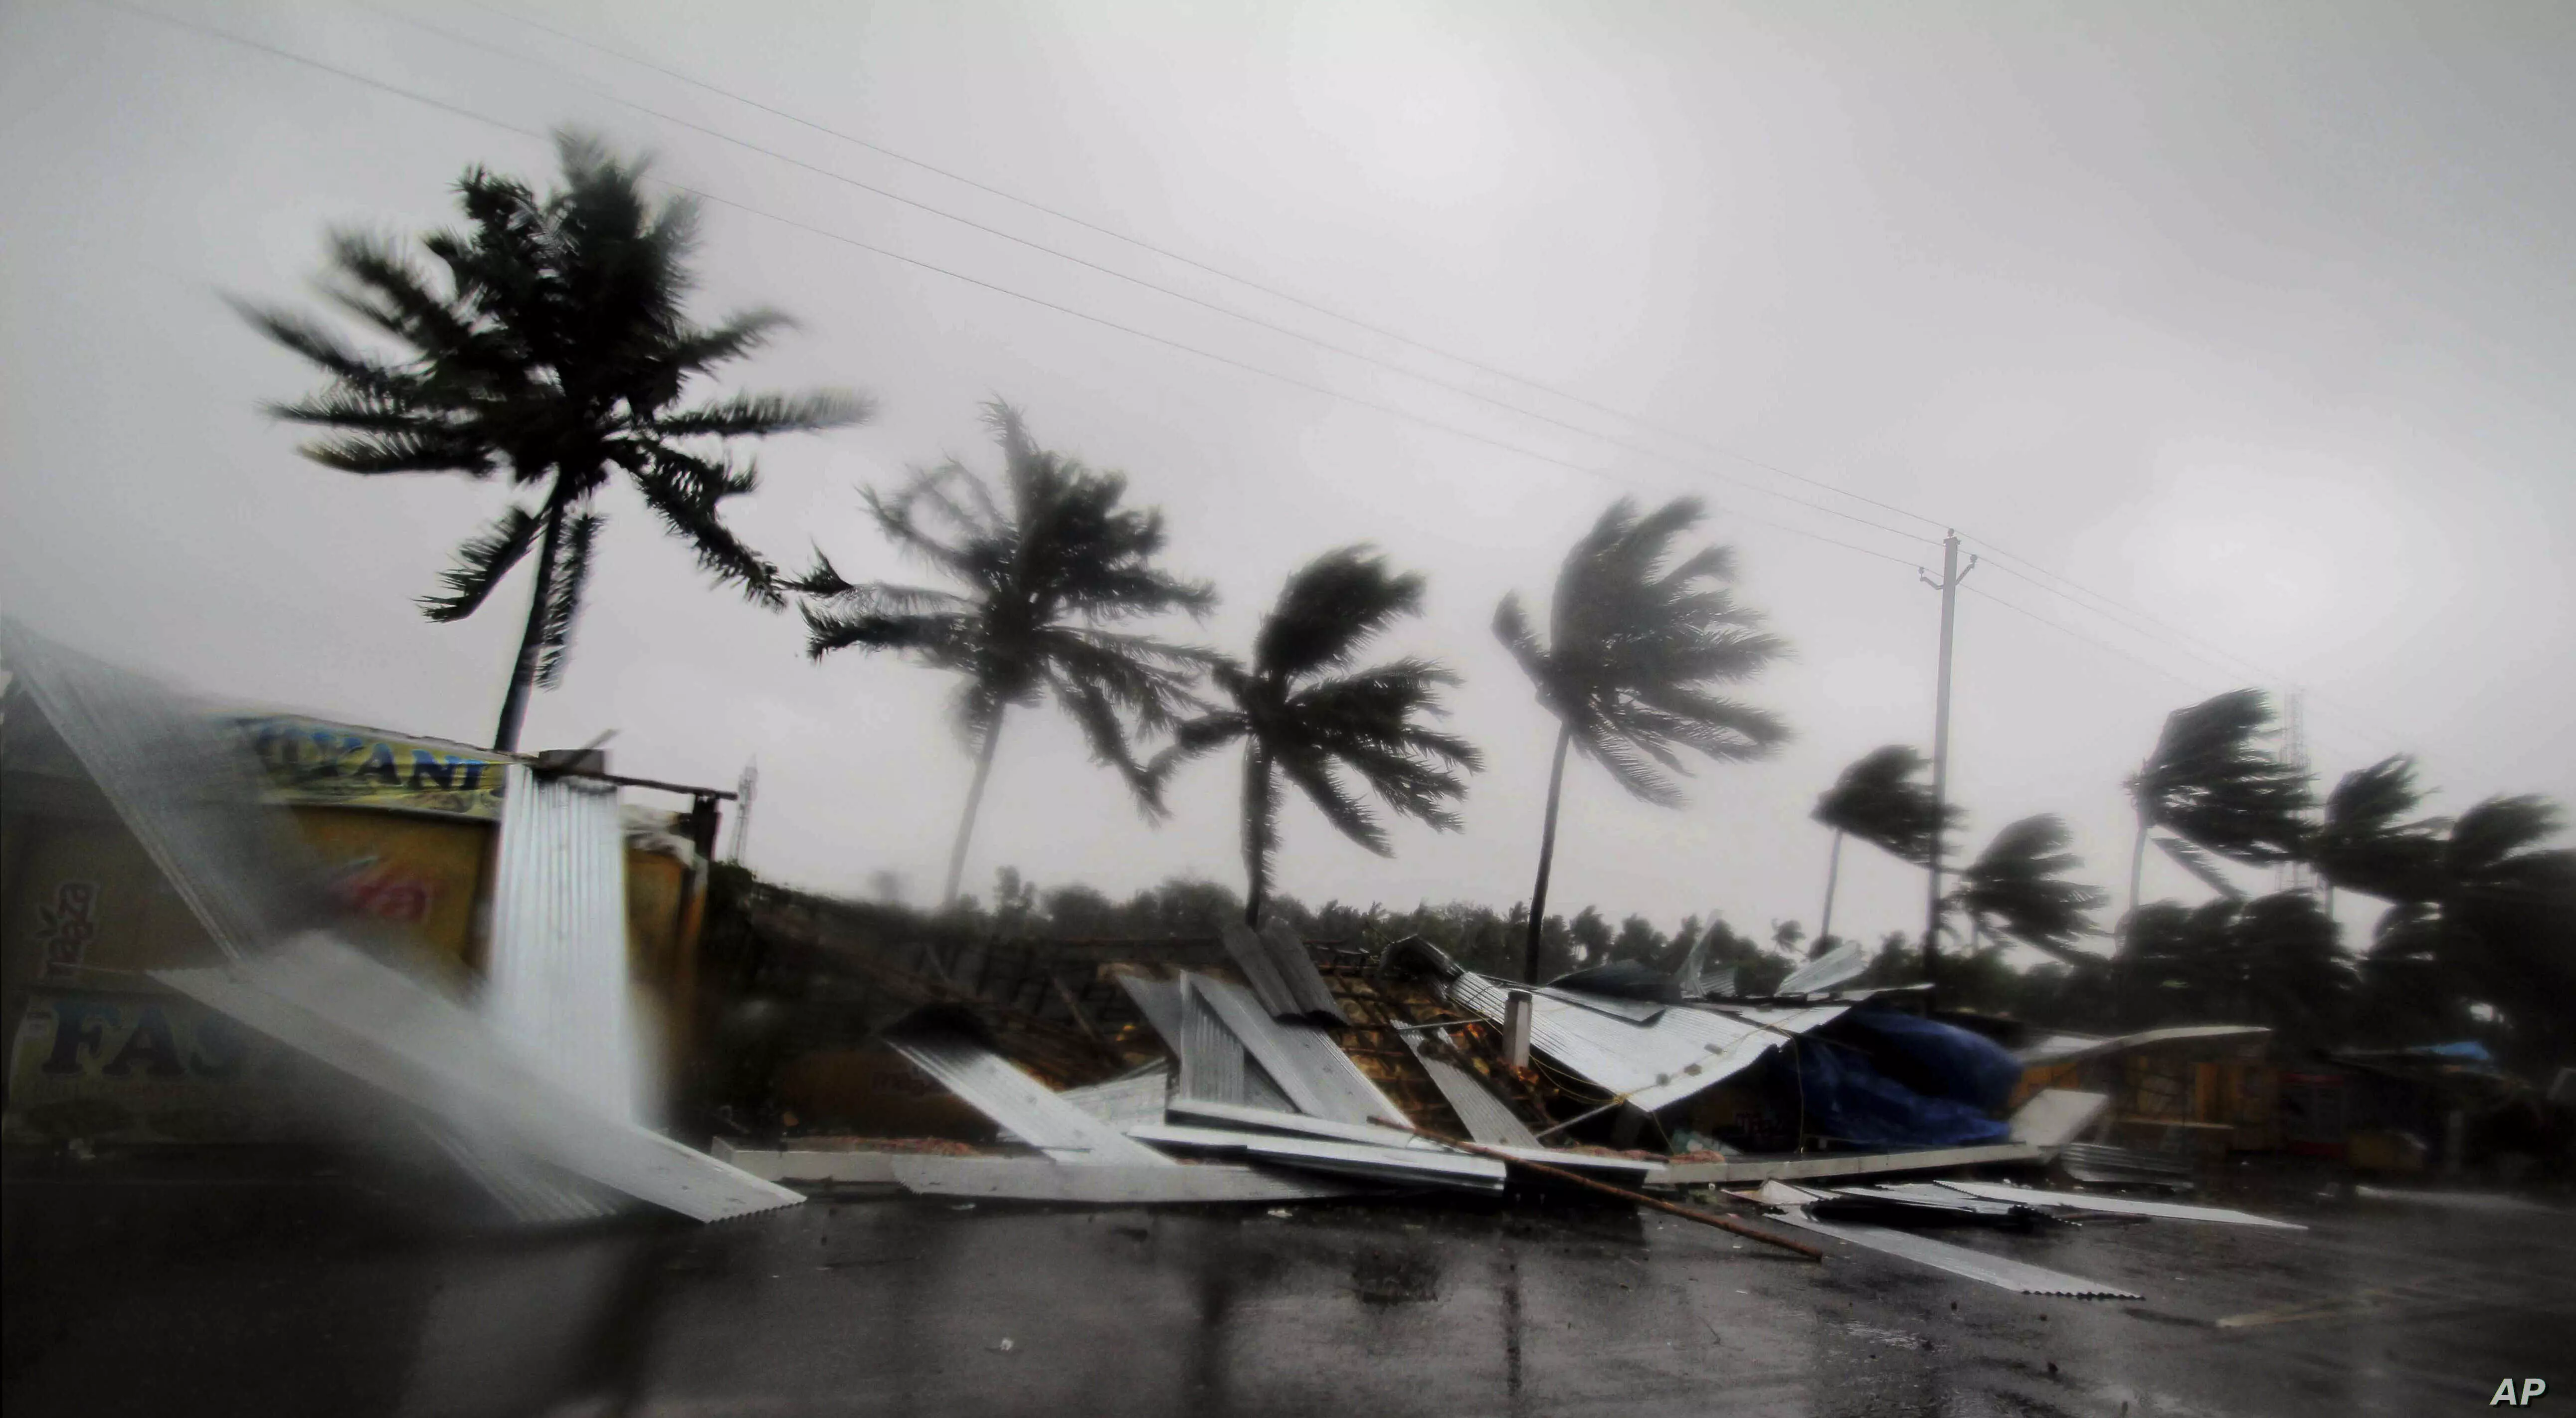 Cyclone Amphan आज मचा सकता है तबाही: तेज हवाएं और बारिश शुरू, जानें मौसम विभाग ने किन बातों की दी है चेतावनी